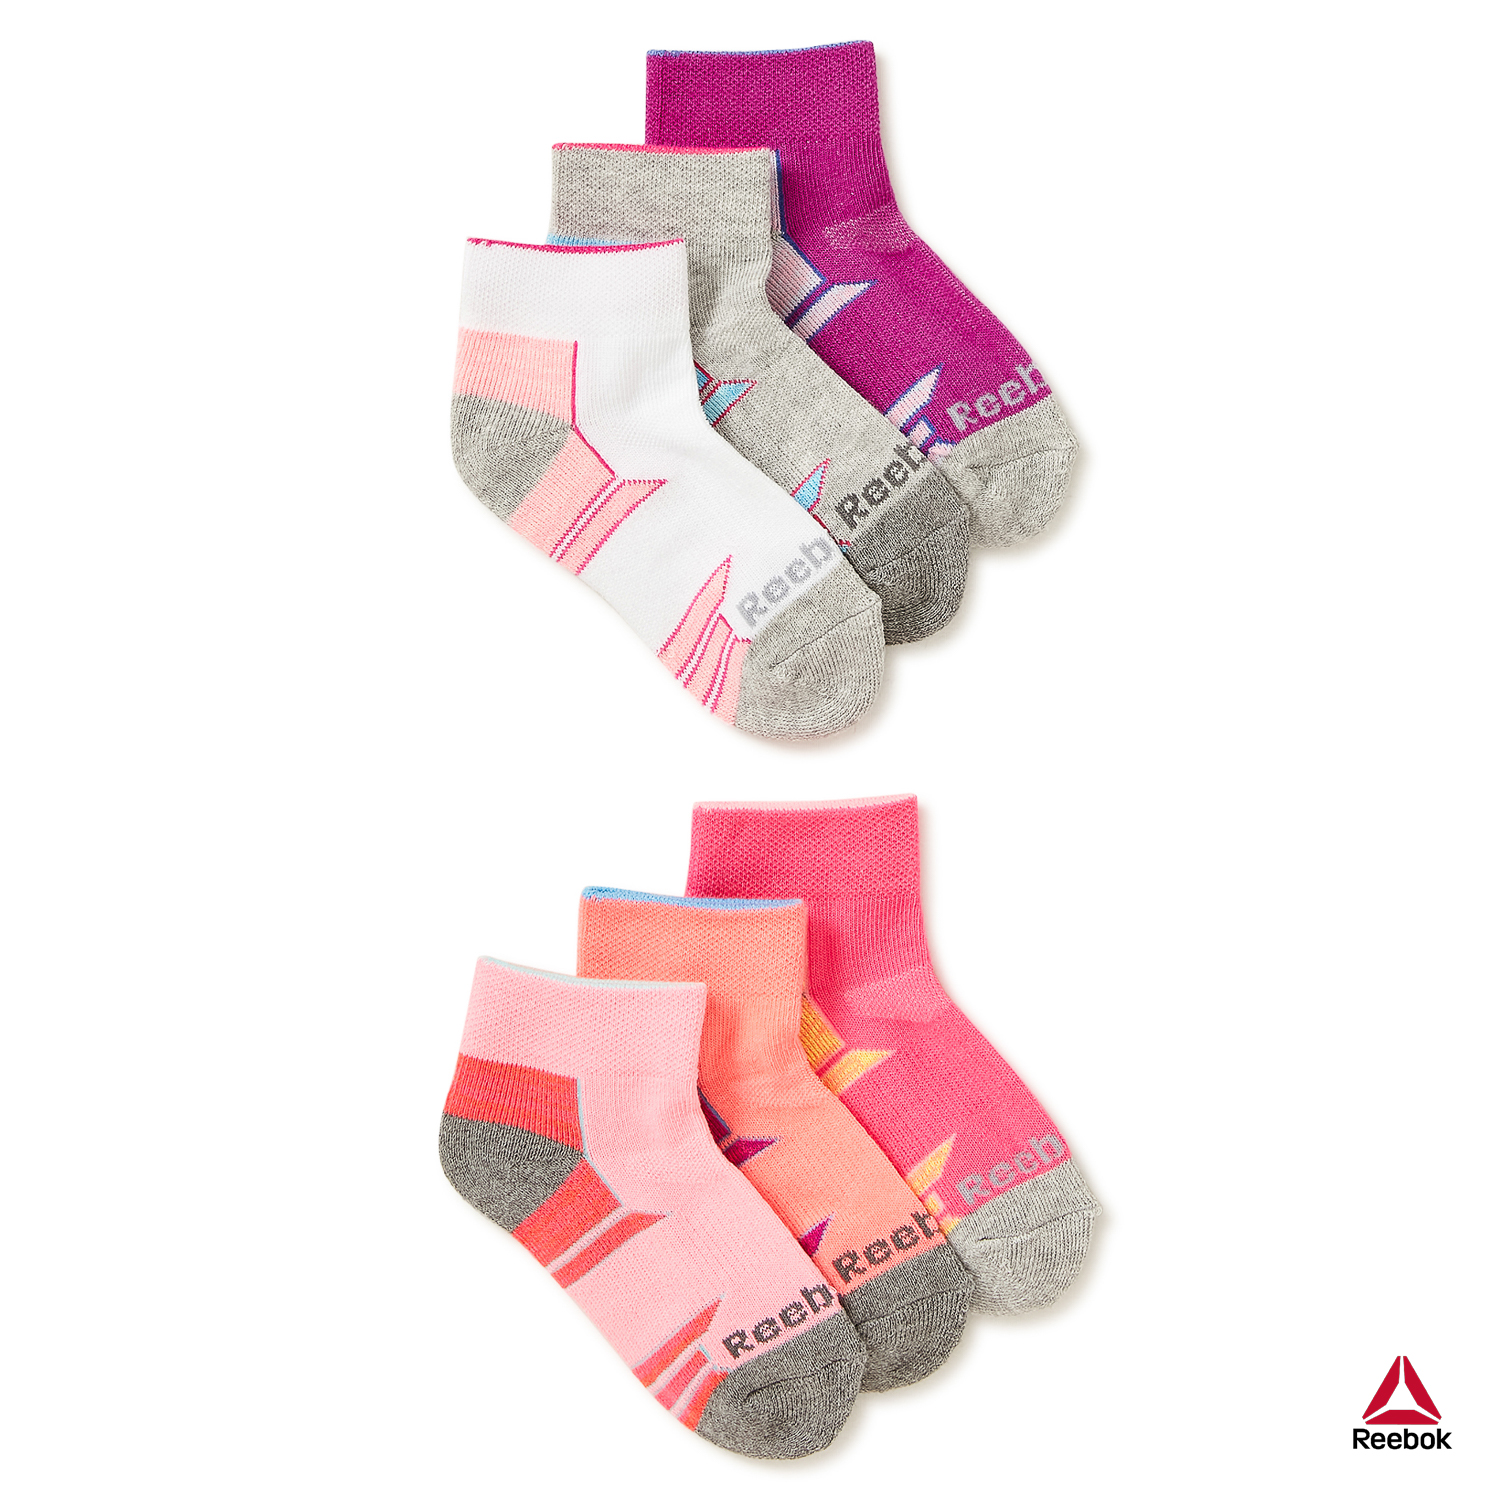 Reebok Girls Pros Series Ankle Socks, 6-Pack - image 1 of 9